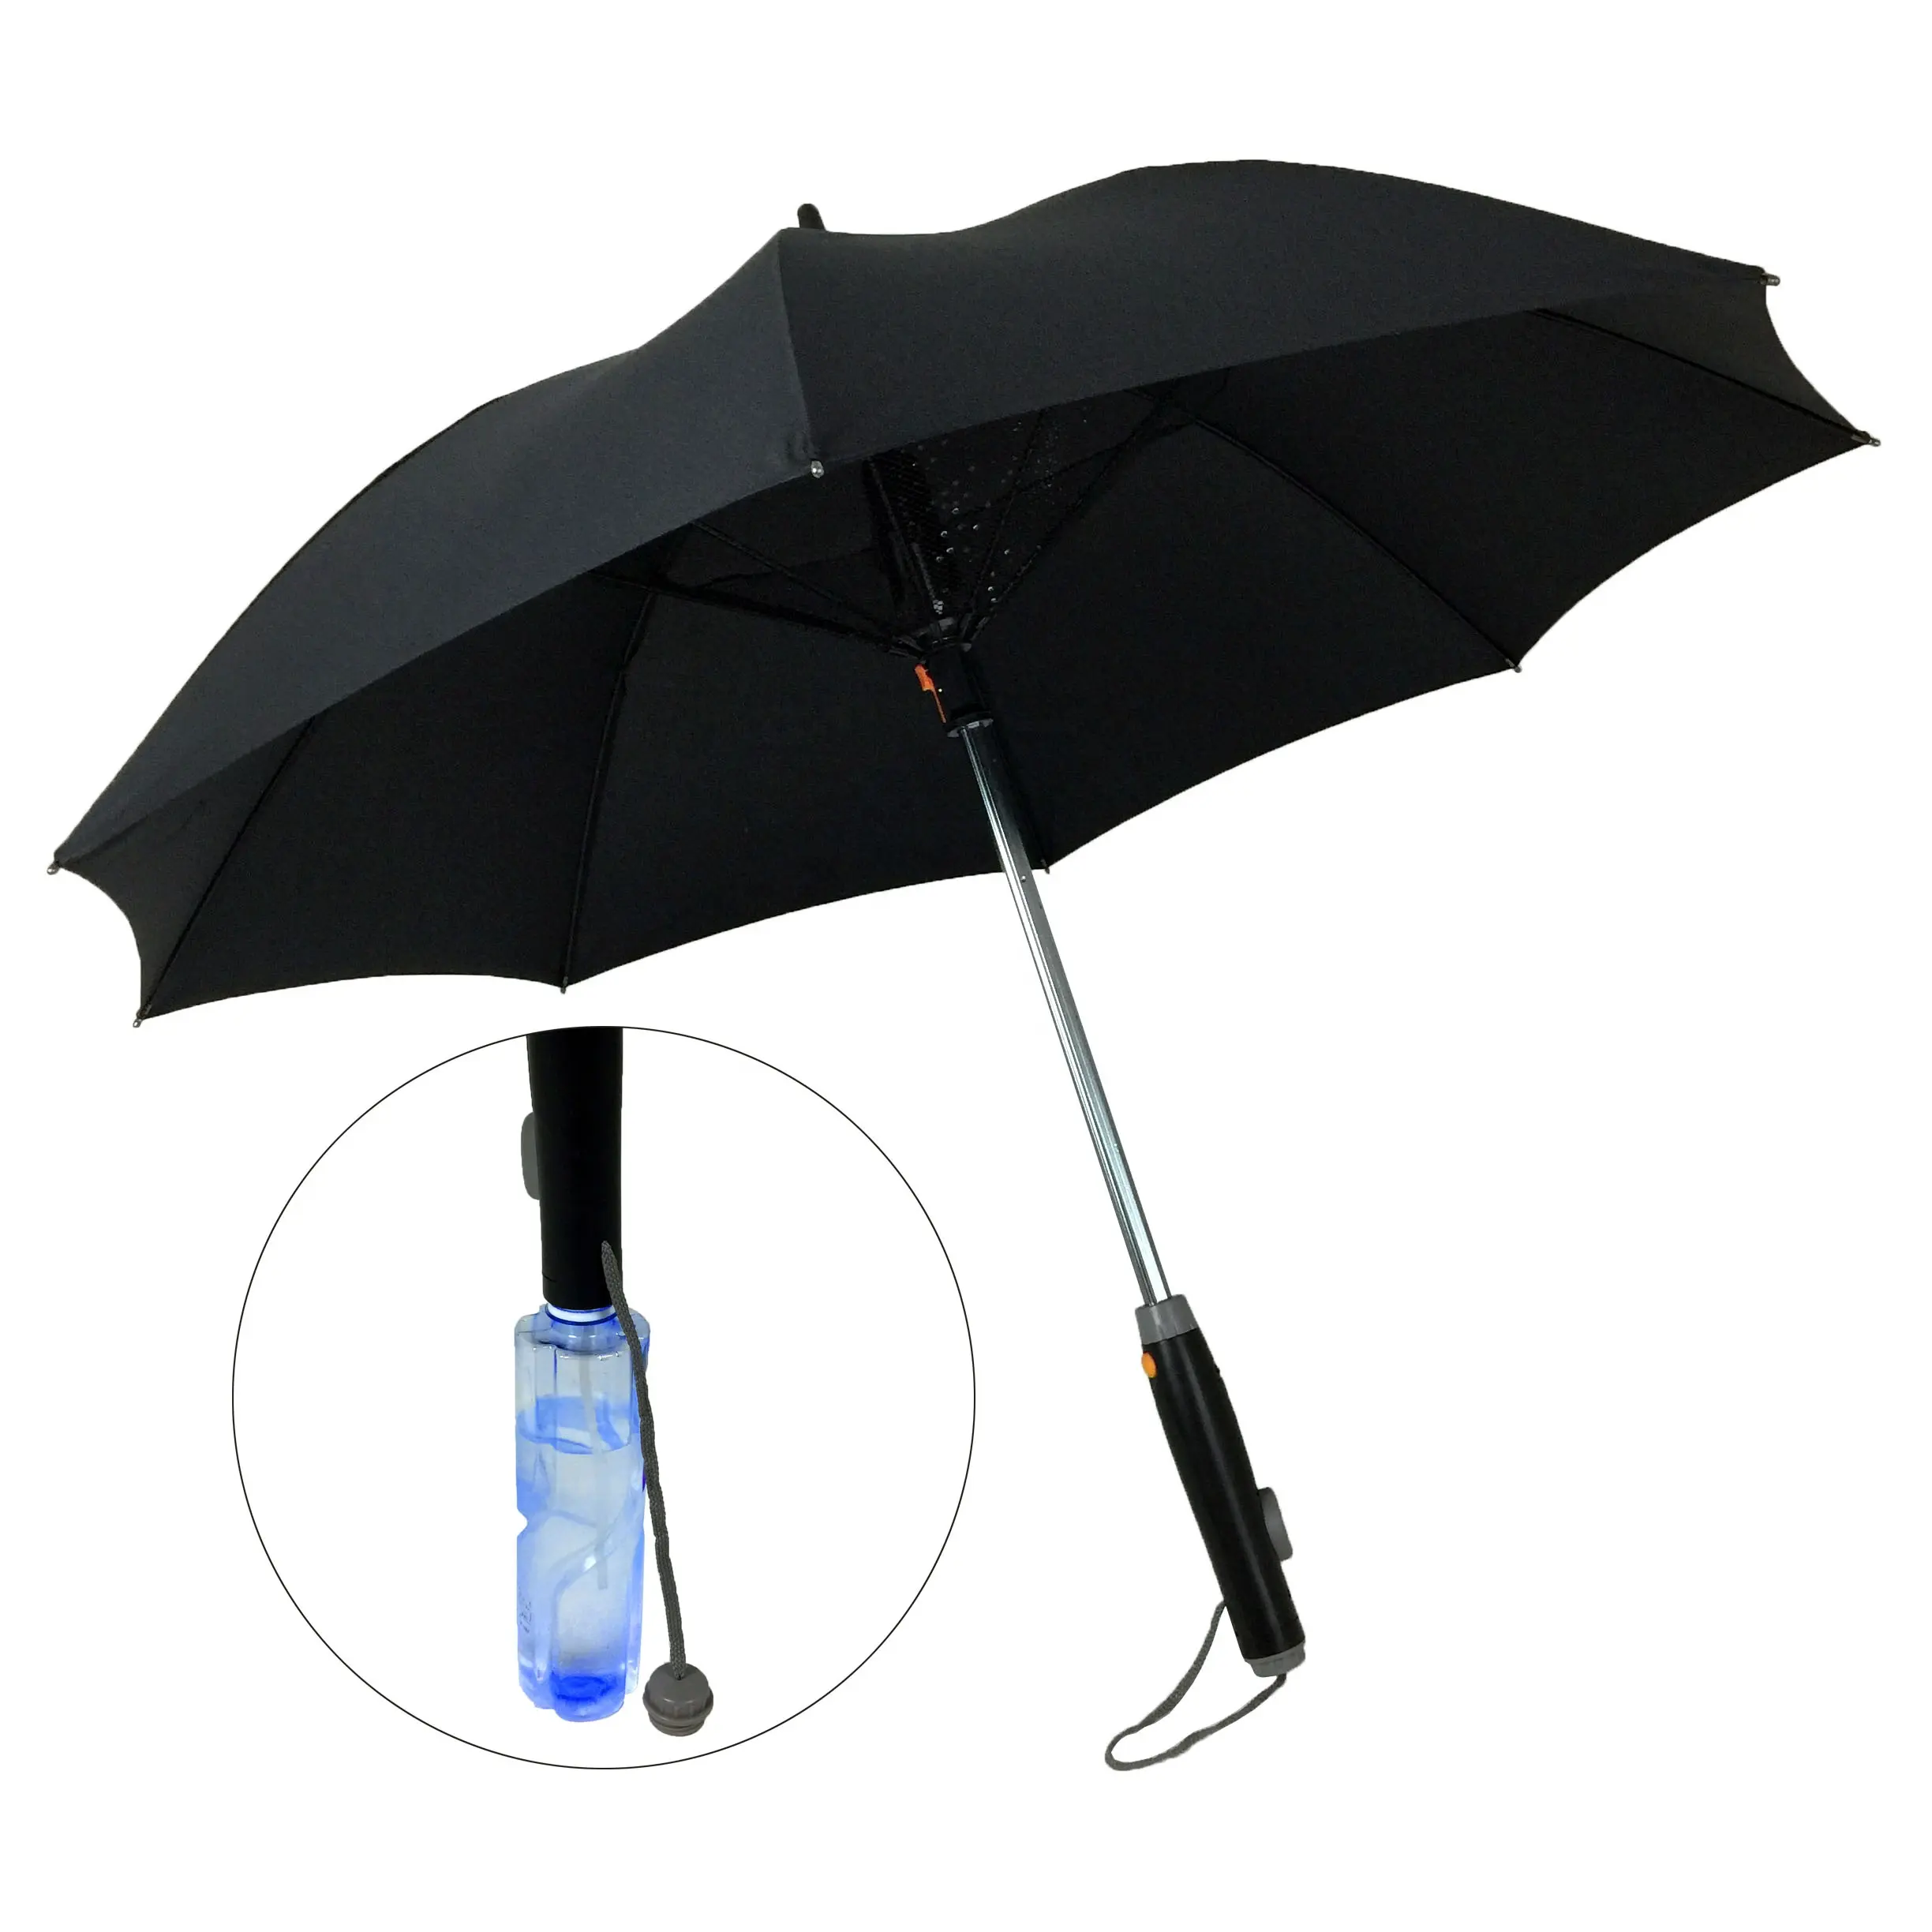 Ventilador Da Névoa de Refrigeração ao ar livre Guarda-chuva Com Ventilador E Função Spray De Água